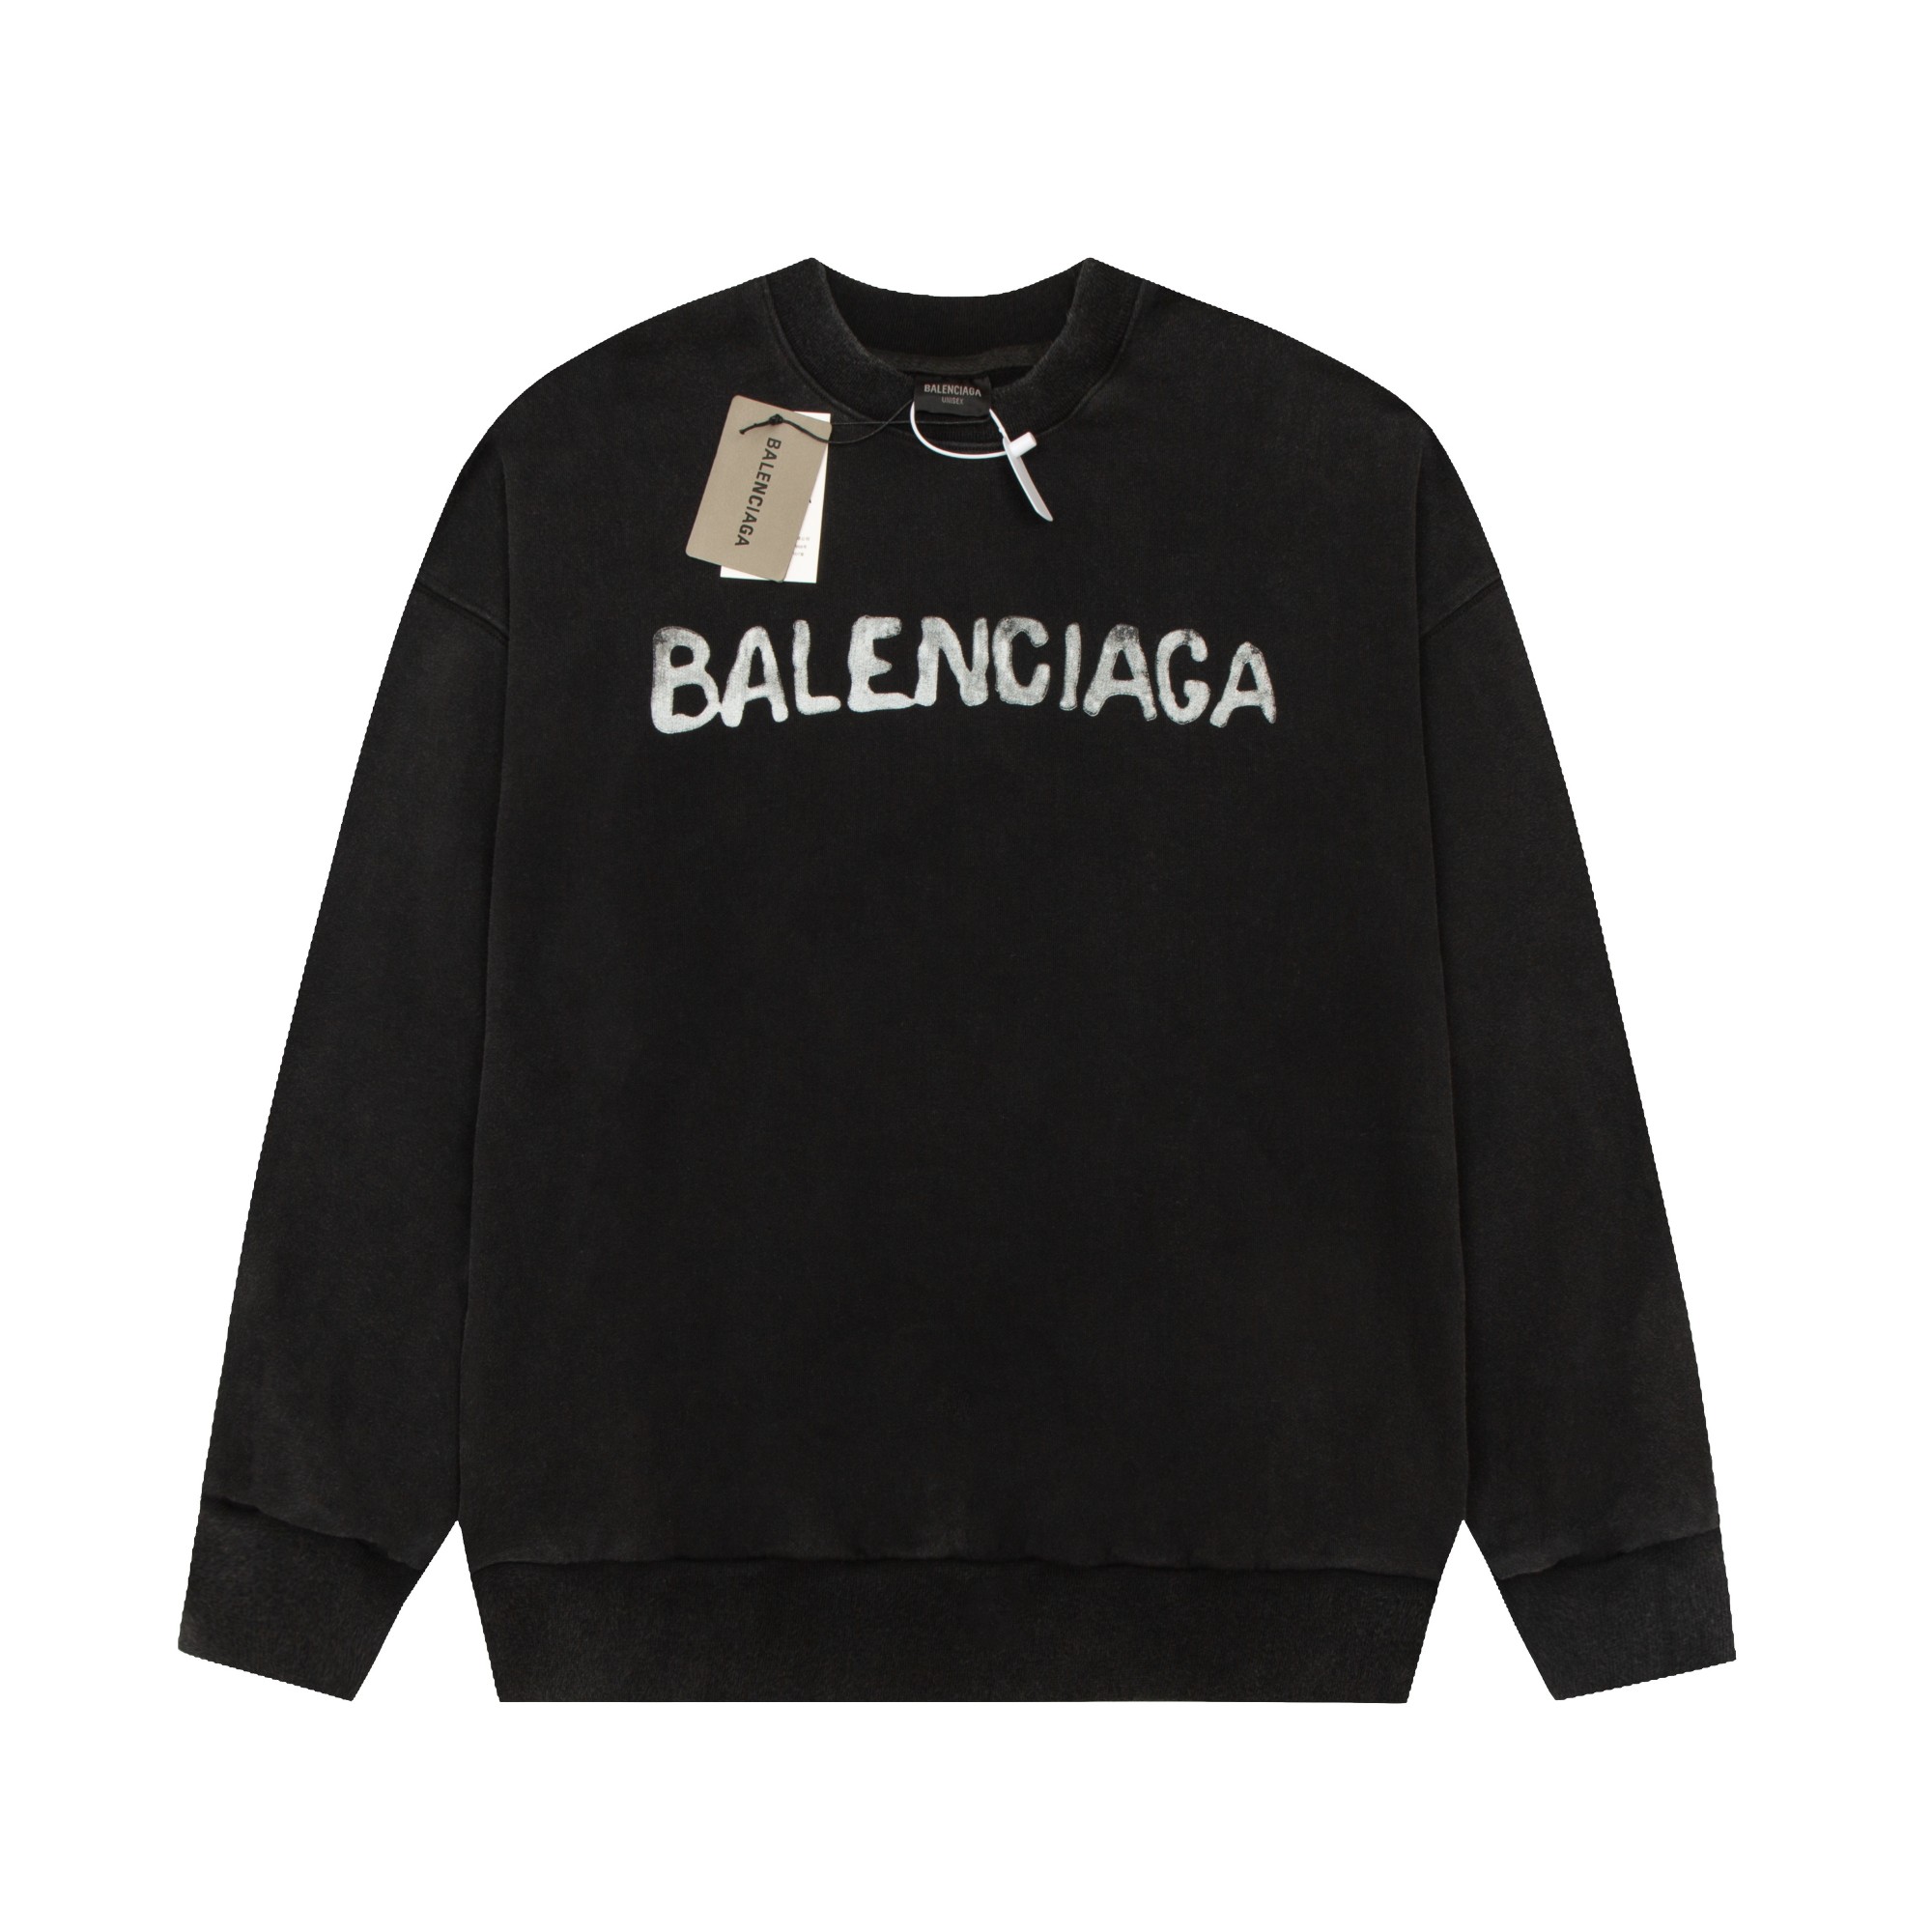 Balenciaga black crew neck sweatshirt